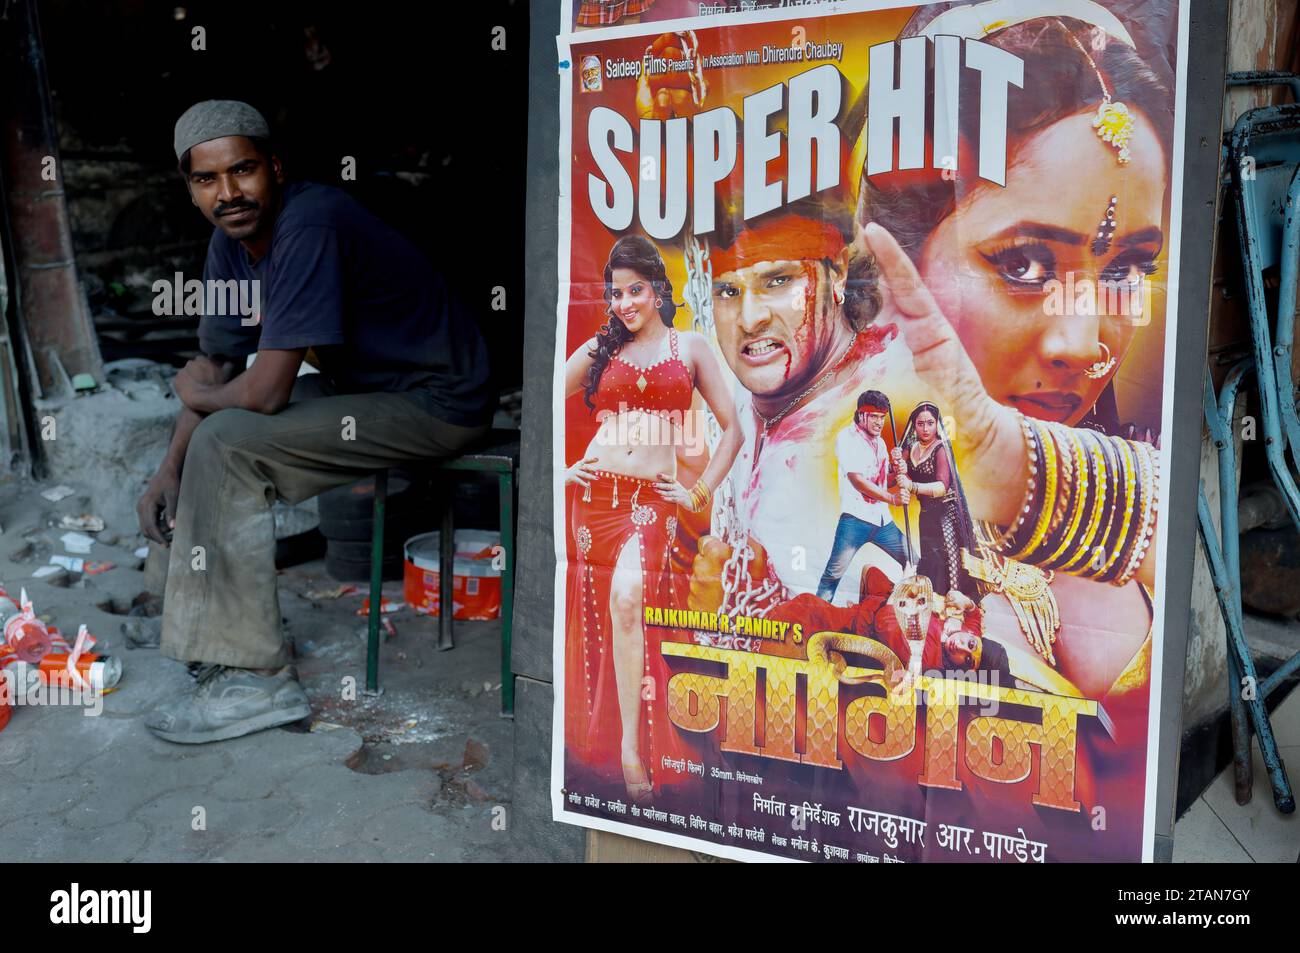 Un Indien est assis dans un atelier à côté d'une publicité pour le film en langue Bhojpuri 'Nagin' (Snake Woman, Venomous Woman) ; Mumbai, Inde Banque D'Images